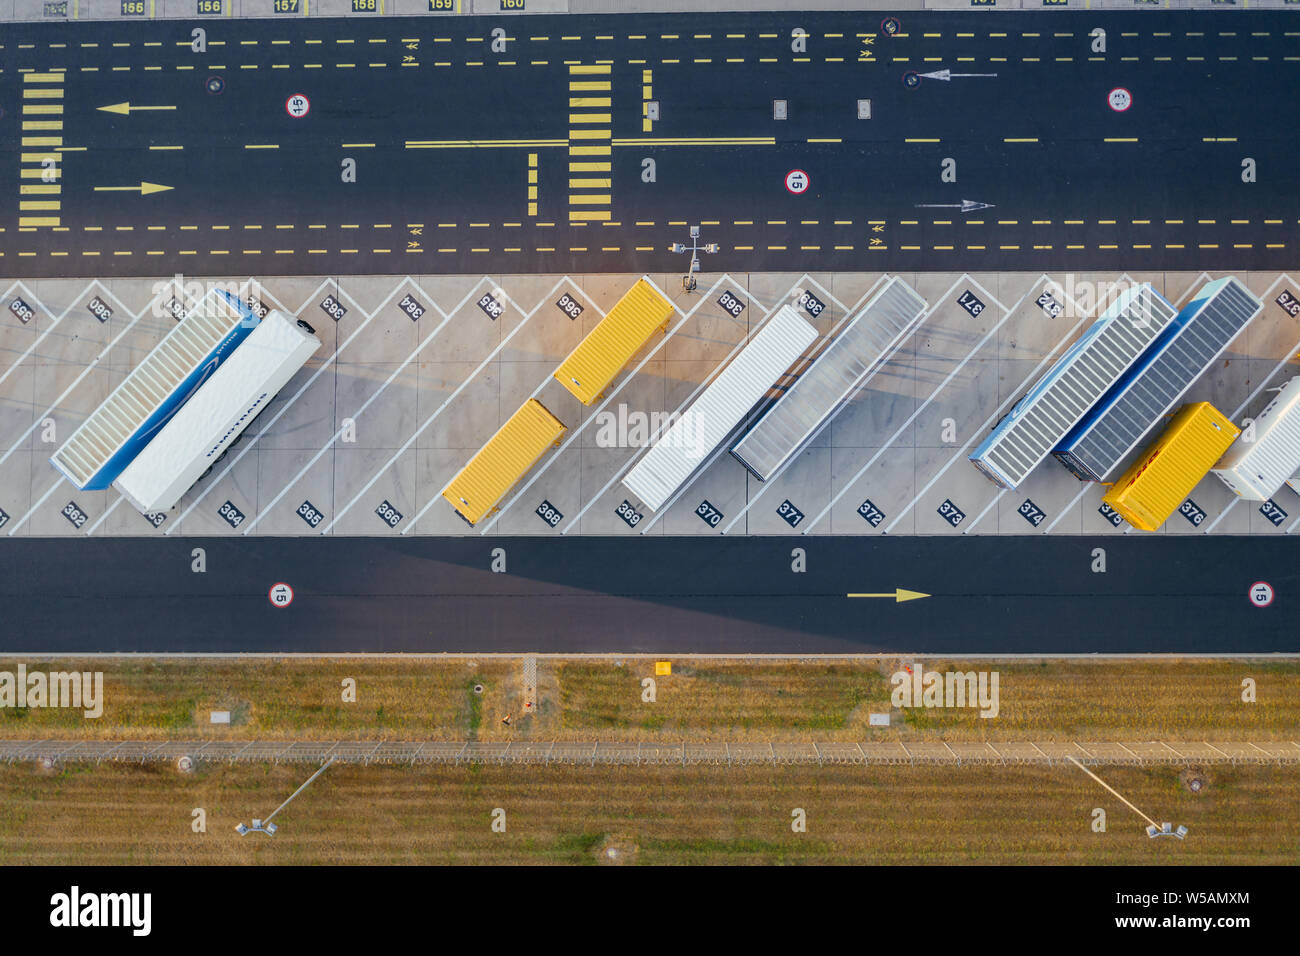 Luftaufnahme der Distribution Center, drone Fotografie der industriellen Logistik Zone. Stockfoto